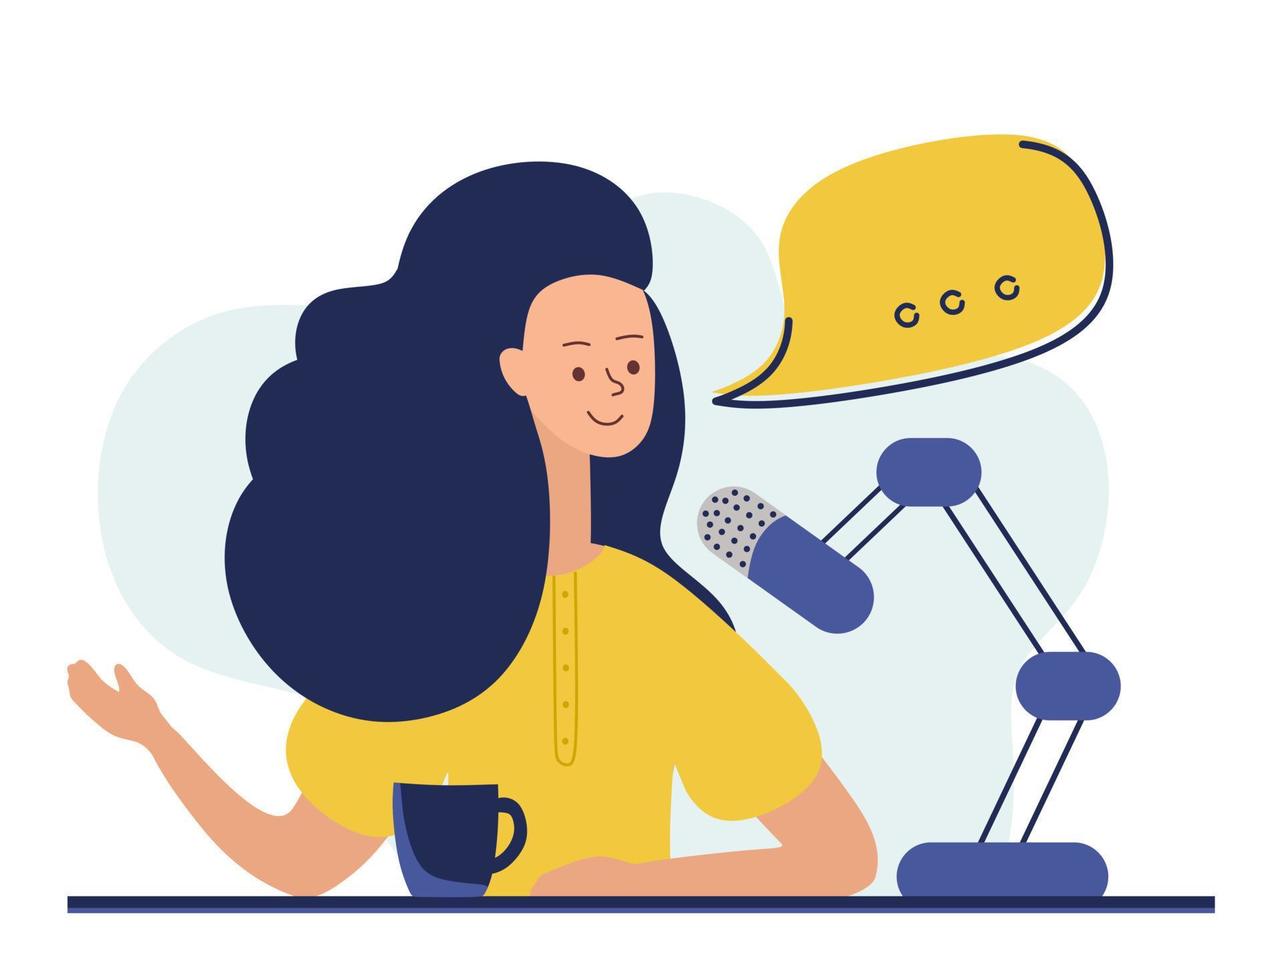 notion de podcast. une illustration sur le podcast. une fille qui parle dans un micro et assise à une table. vecteur plat dans un style à la mode.